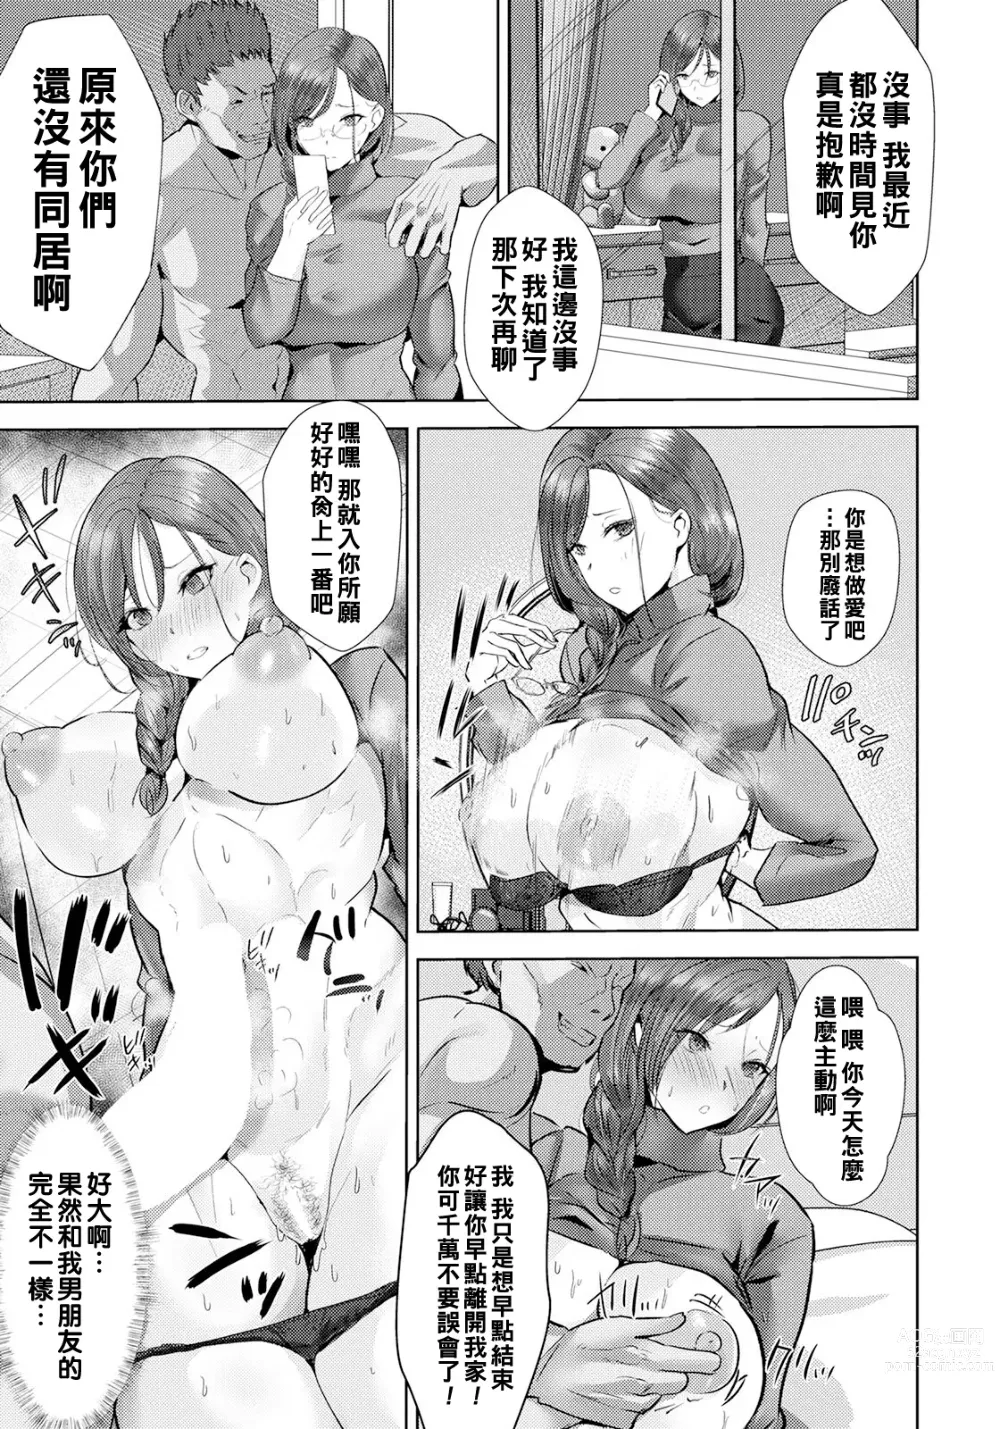 Page 15 of manga Inkou Revival